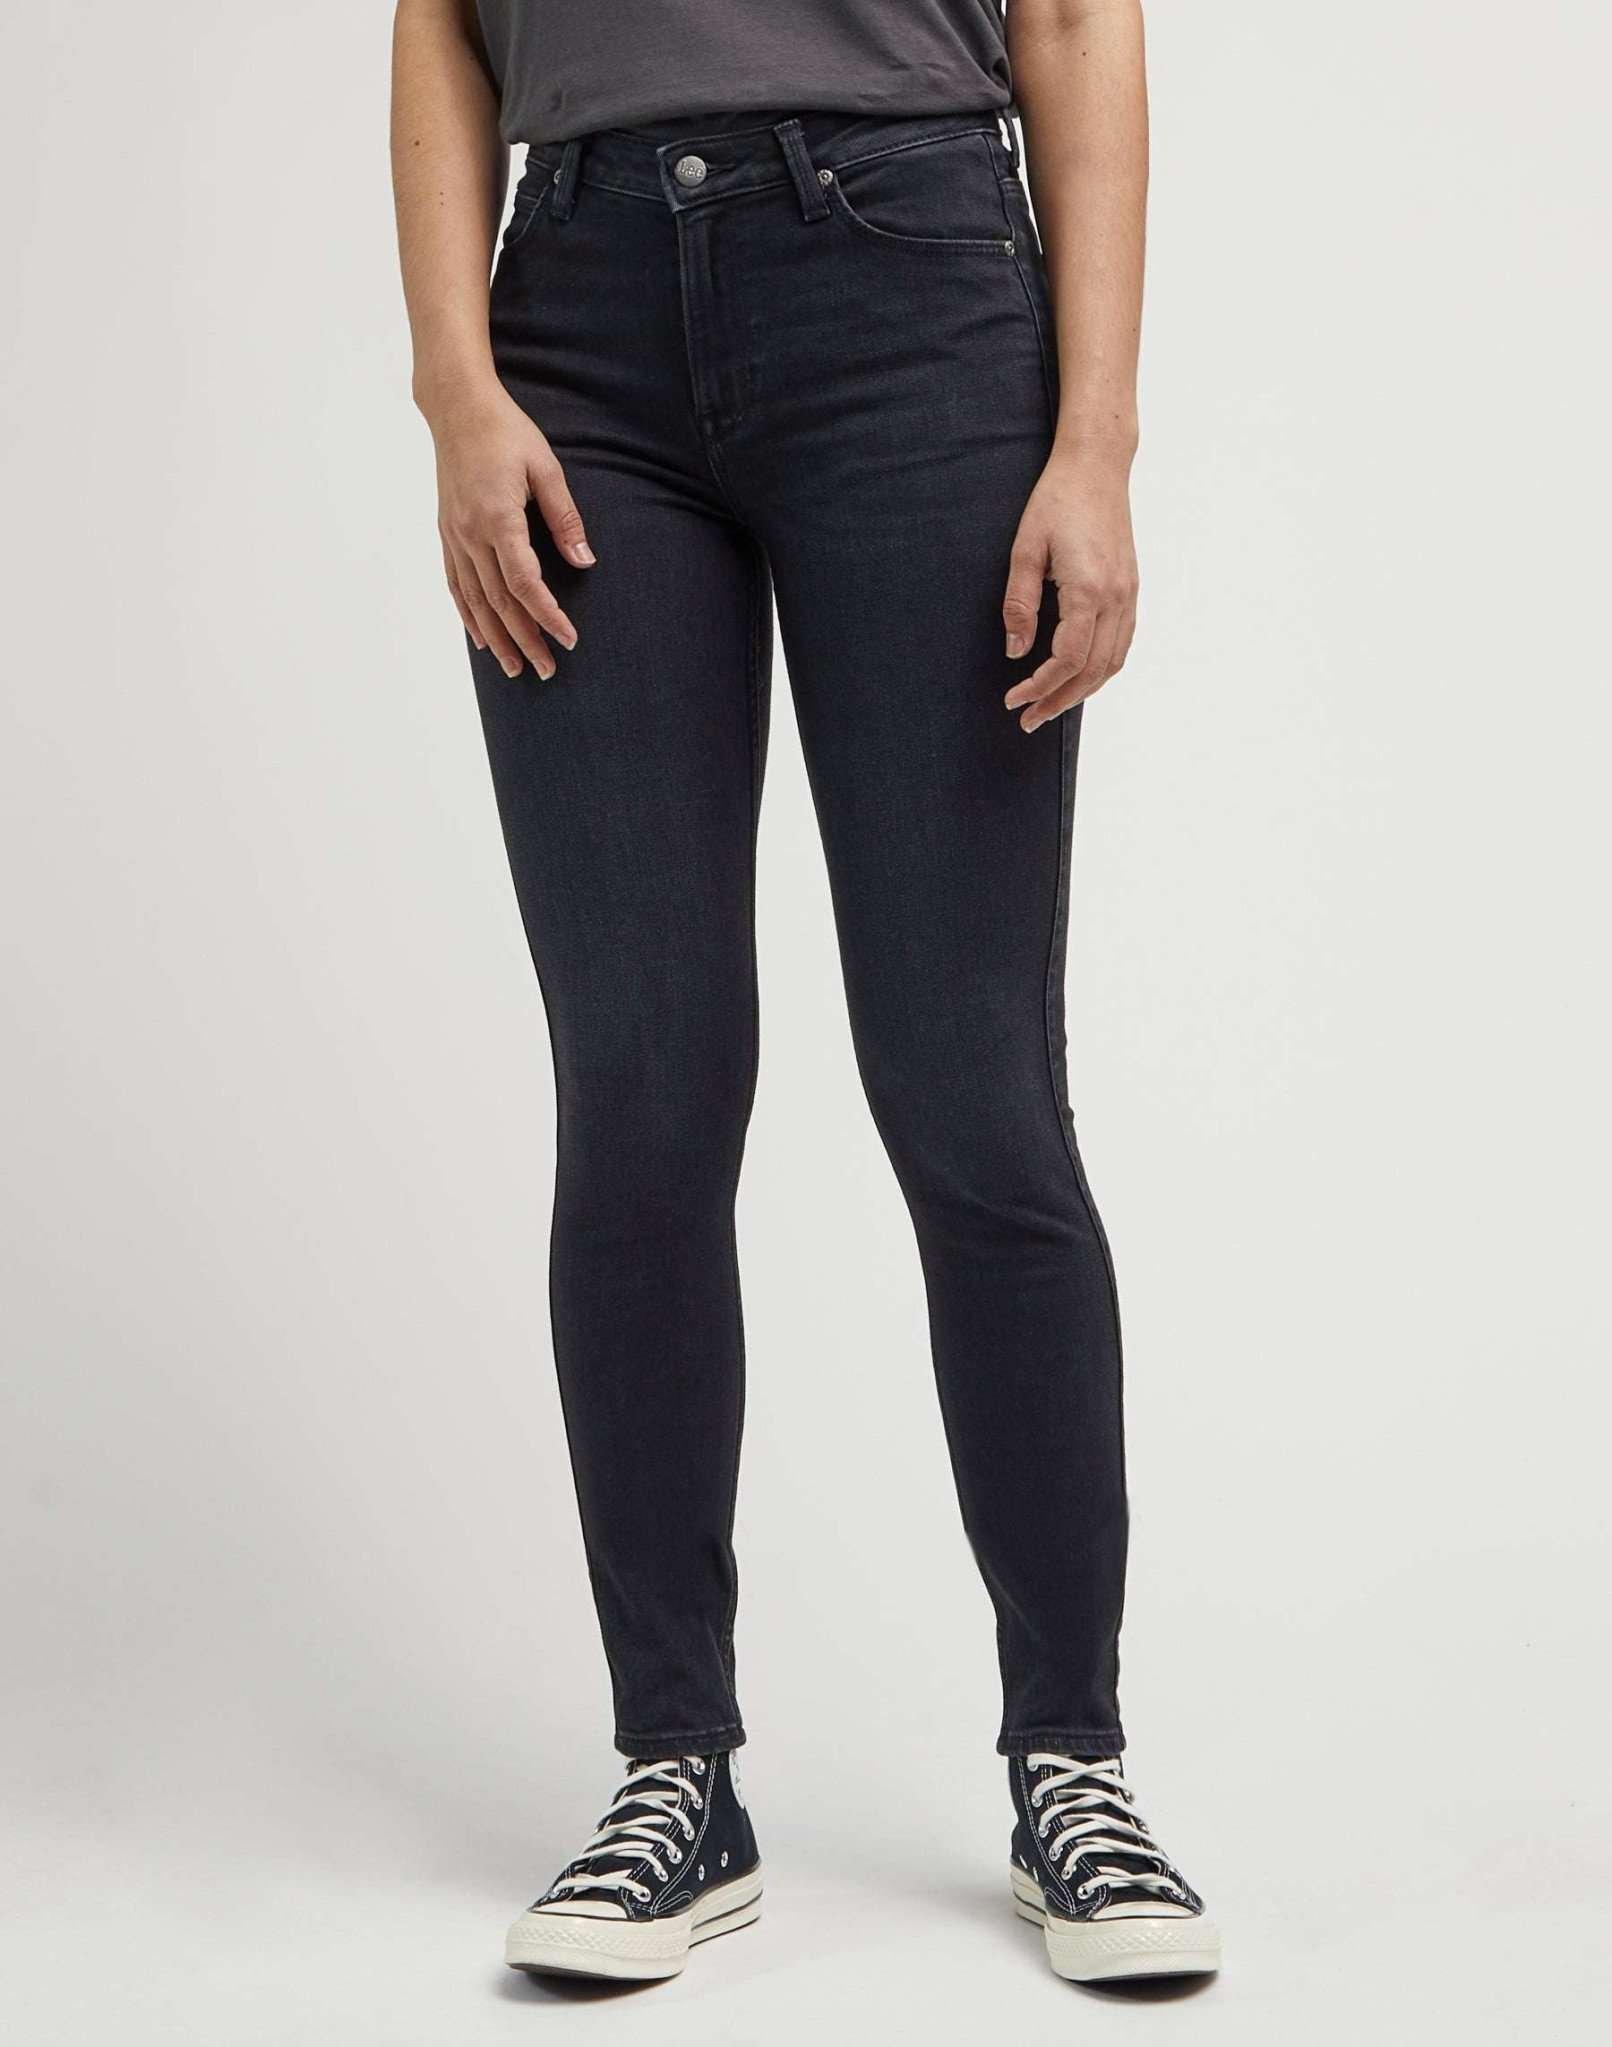 Jeans Skinny Fit Scarlett High Damen Schwarz L31/W30 von Lee